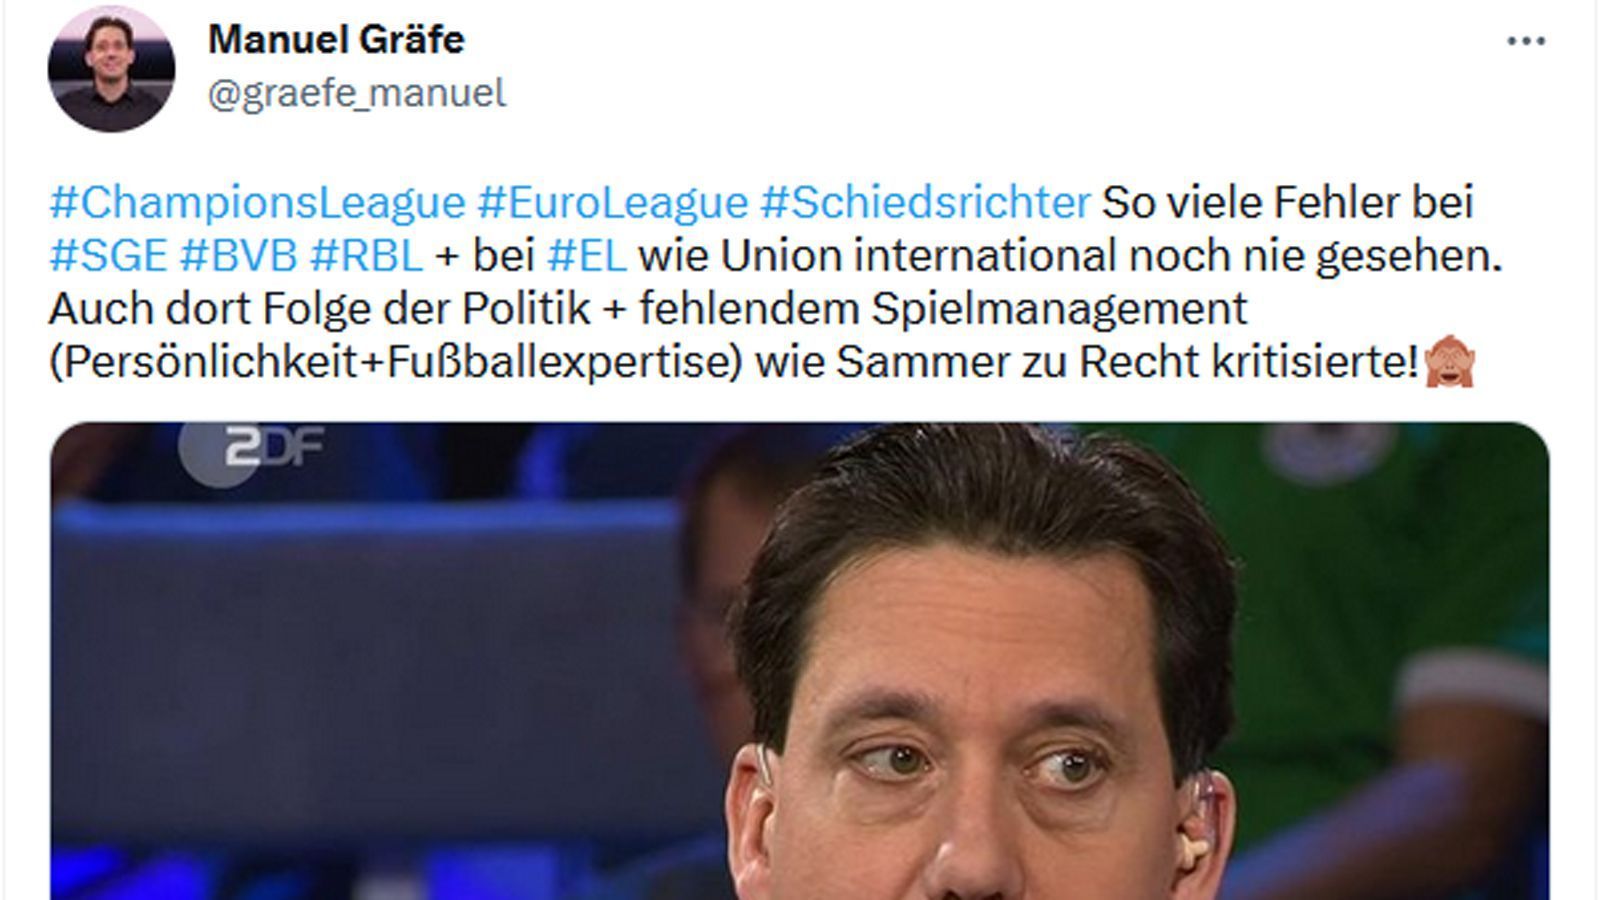 
                <strong>Gräfe kritisiert auch internationale Schiedsrichter</strong><br>
                Aber auch die internationalen Schiedsrichter in Champions League und Europa League sind nicht vor der Kritik von Manuel Gräfe geschützt. Gräfes Twitter-Account ist so etwas wie das schlechte Gewissen des Schiedsrichterwesens, insbesondere des Deutschen.
              